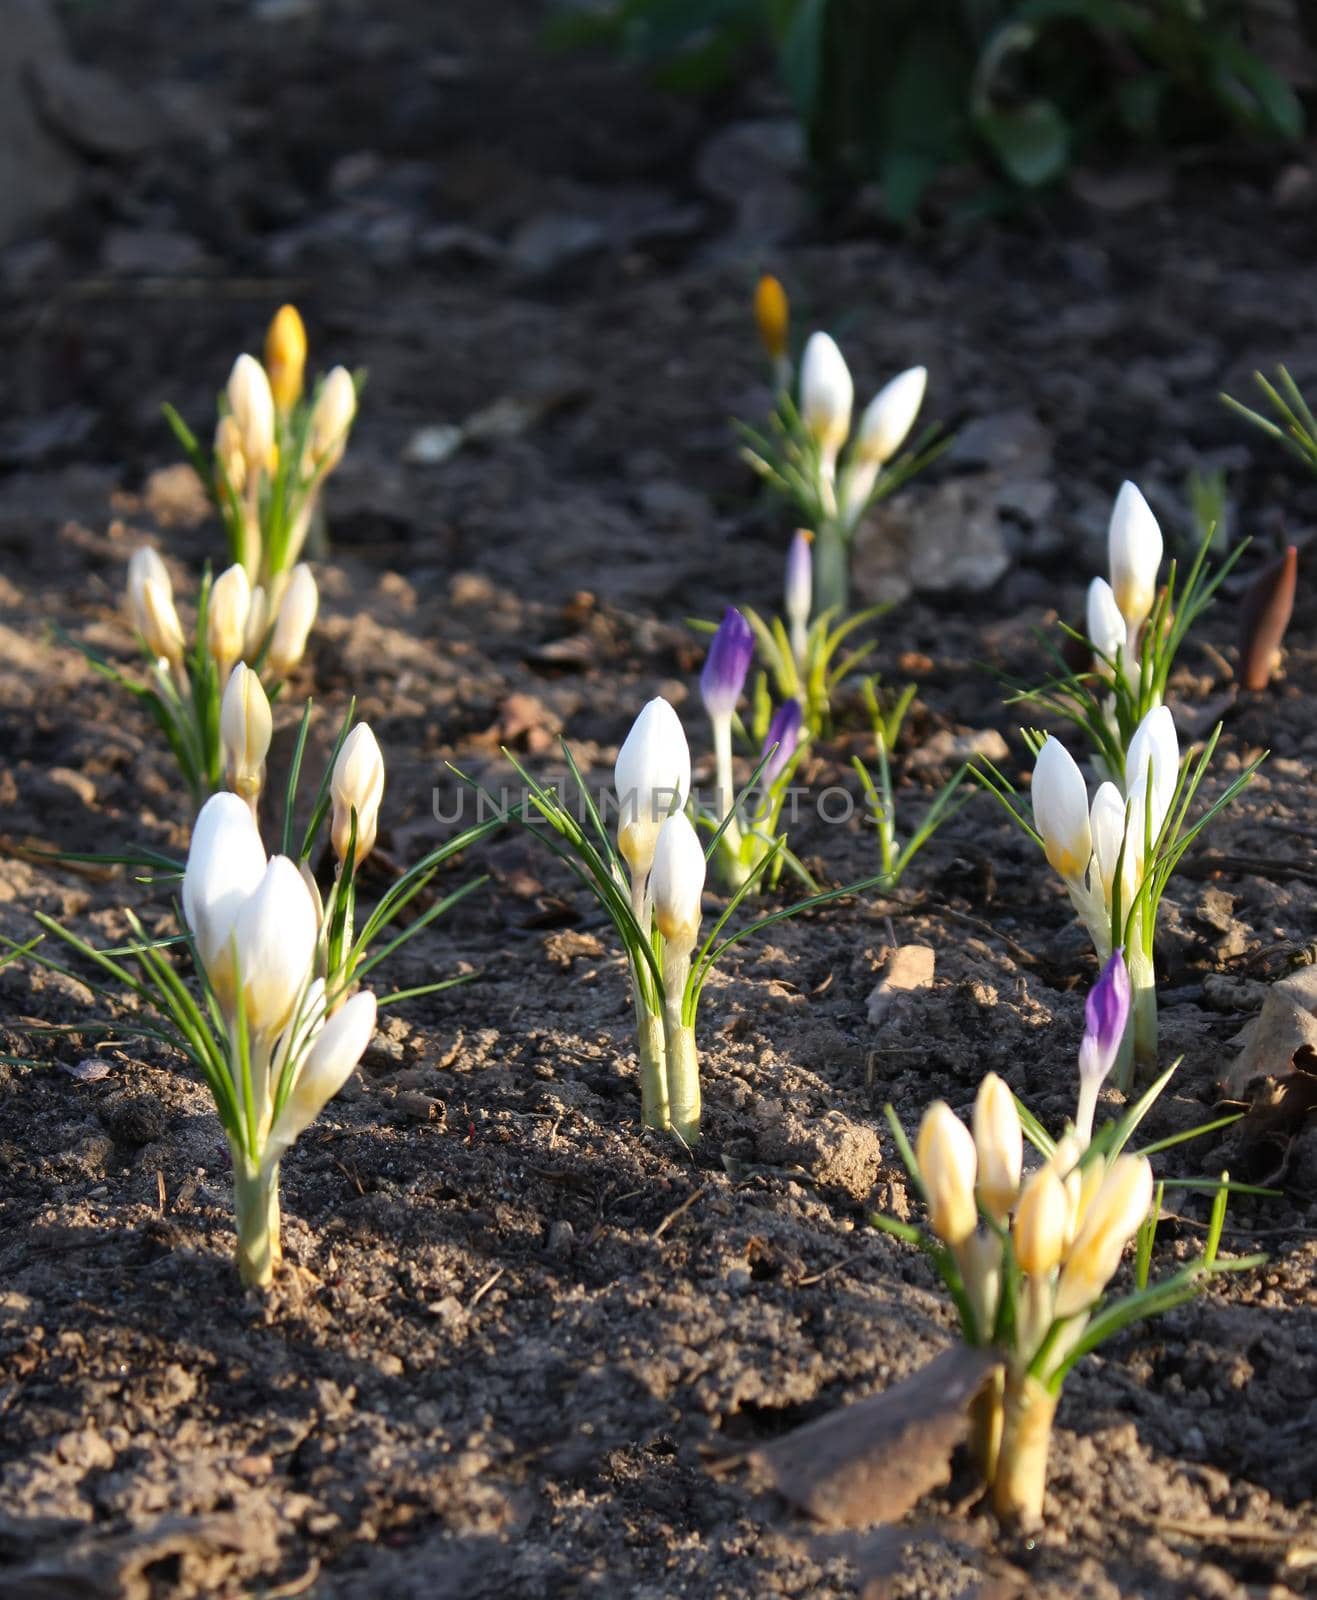 Crocus flowers in sunlight growing in a spring garden outdoors